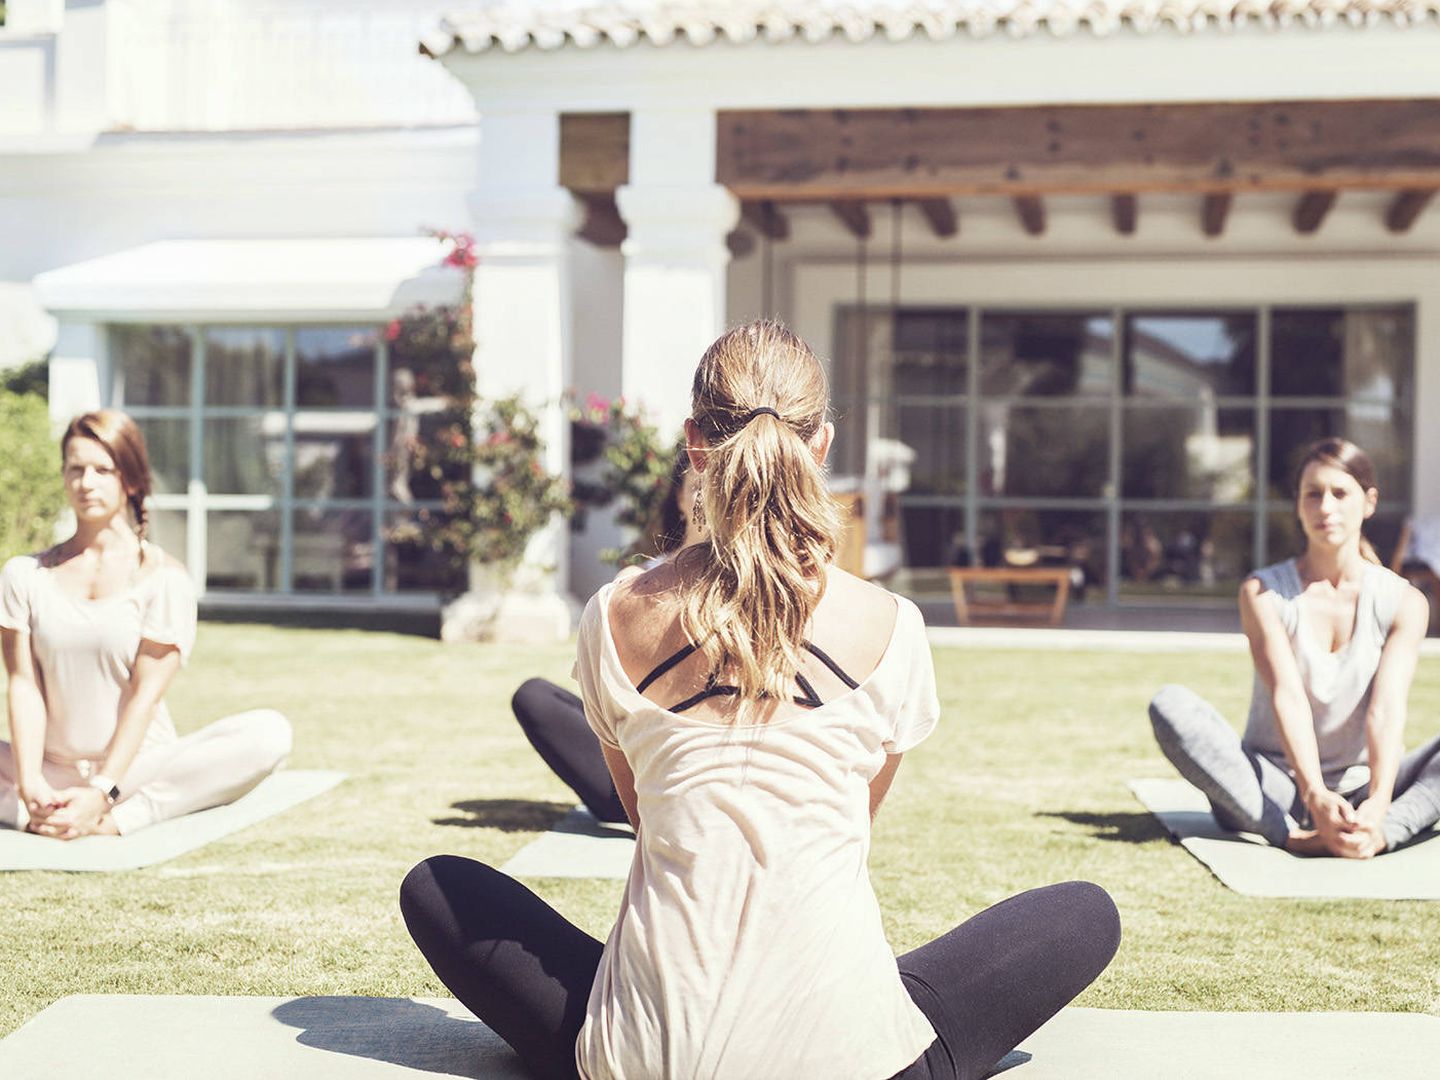 Un plan de pilates o yoga en medio de la naturaleza. (Cortesía Marbella Club)